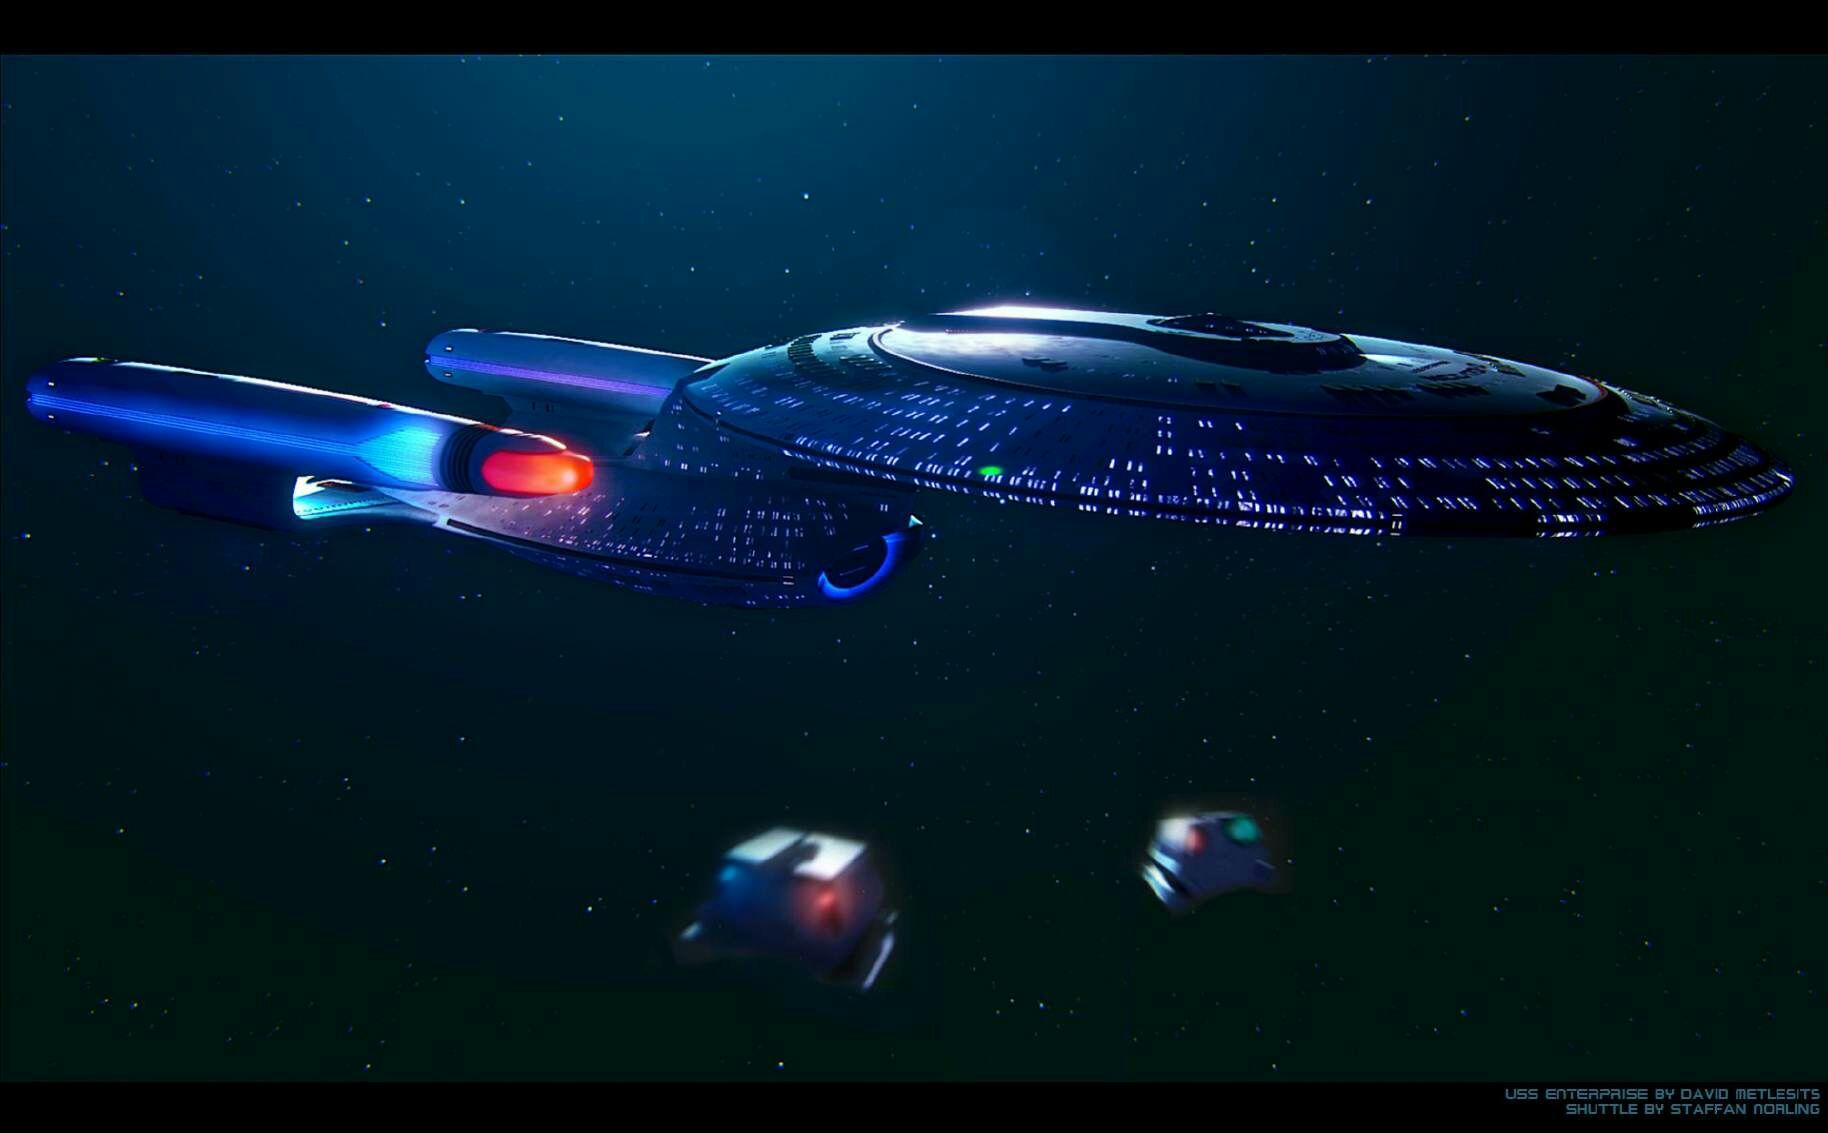 《星际迷航3 超越星辰》中已经证明进取号的结构有致命缺陷,为什么新